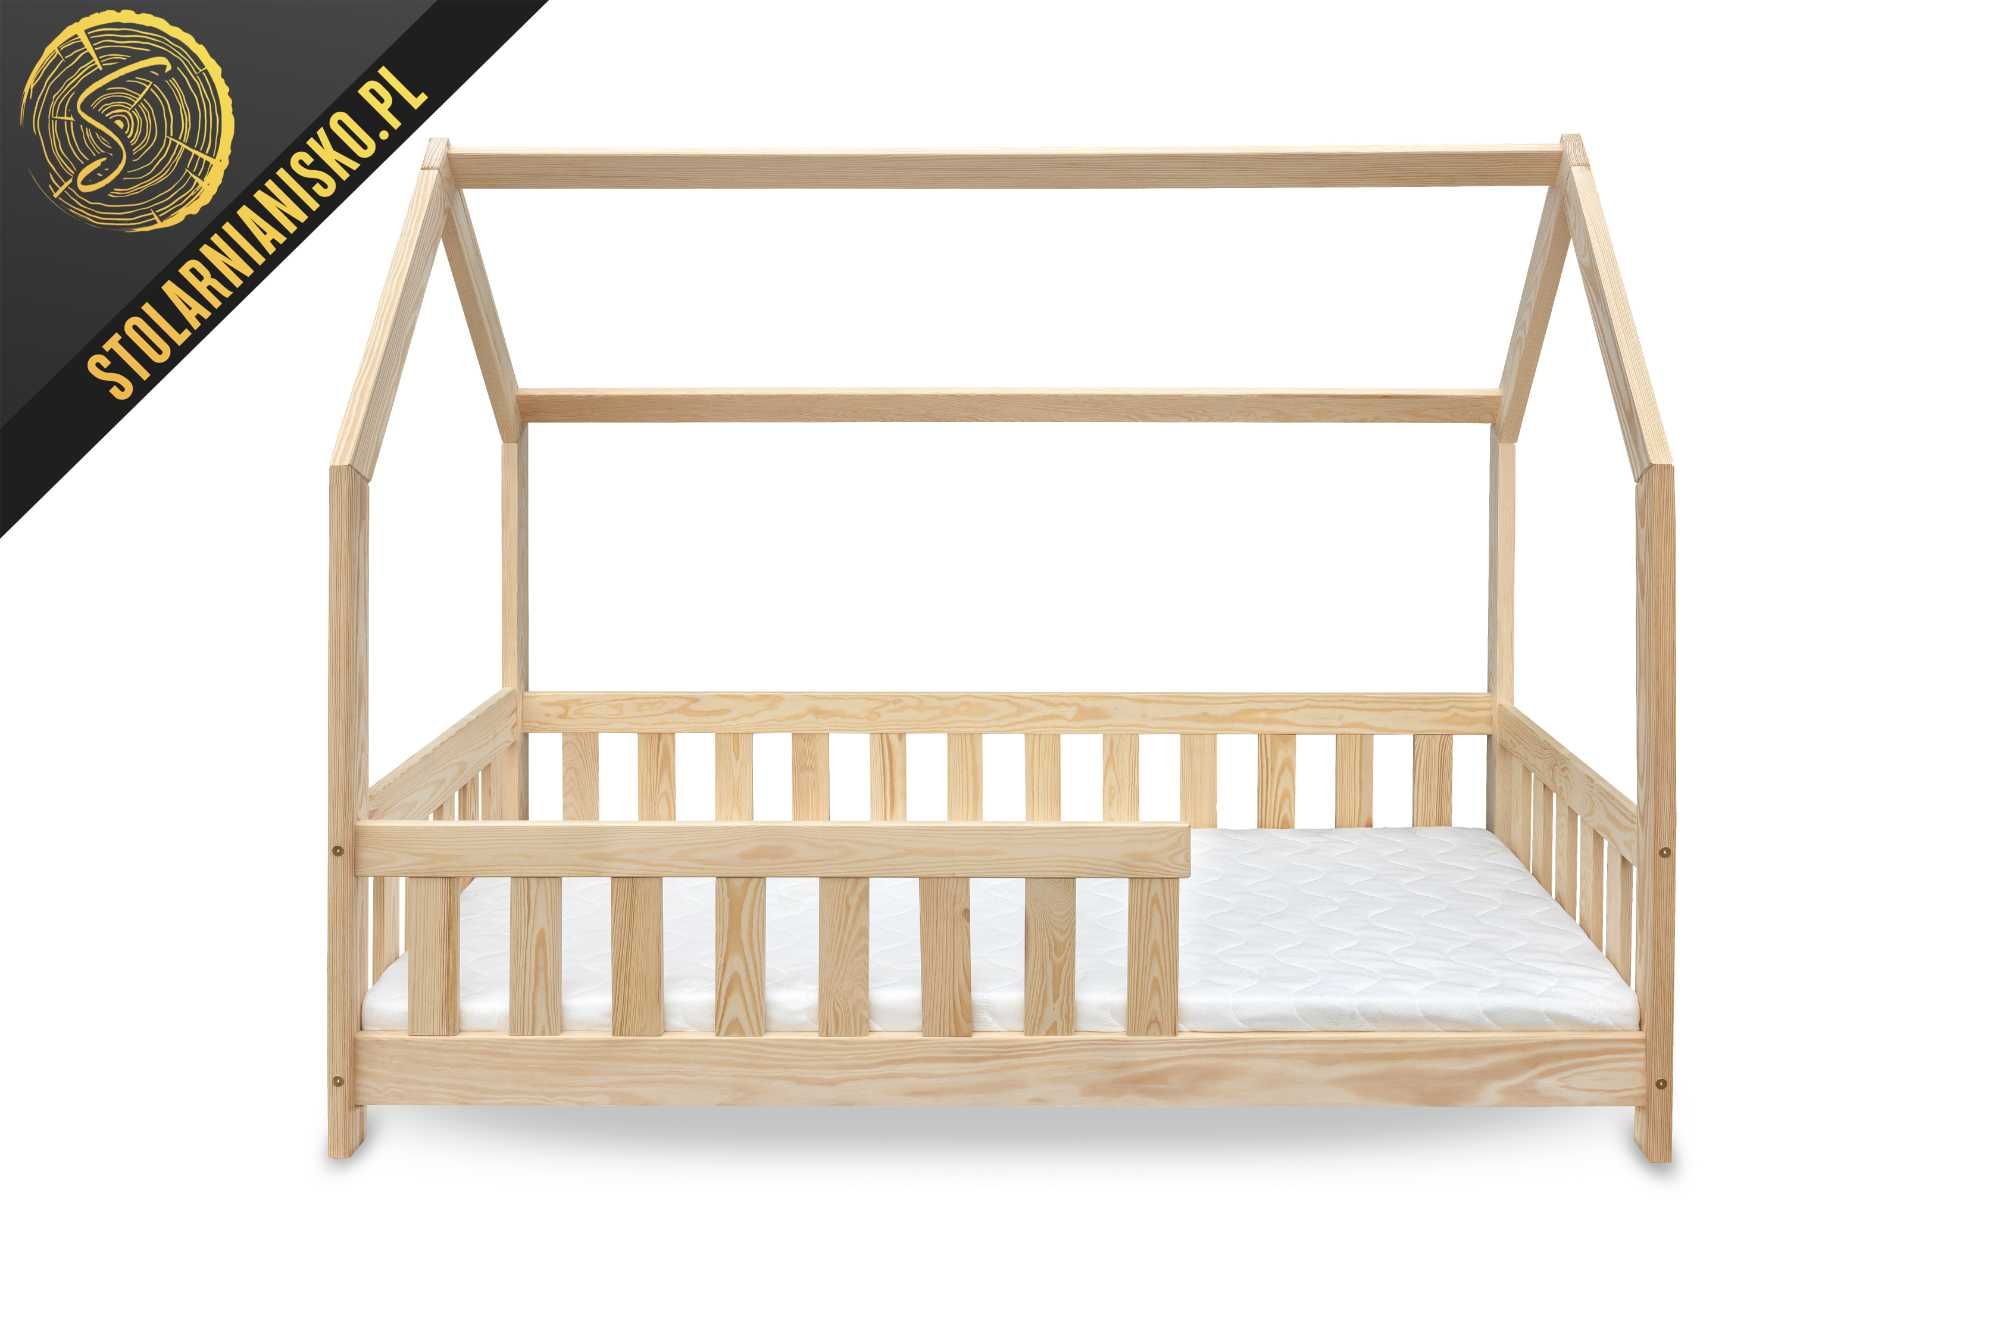 Łóżko domek dla dziecka 80x160 nielakierowane. Producent